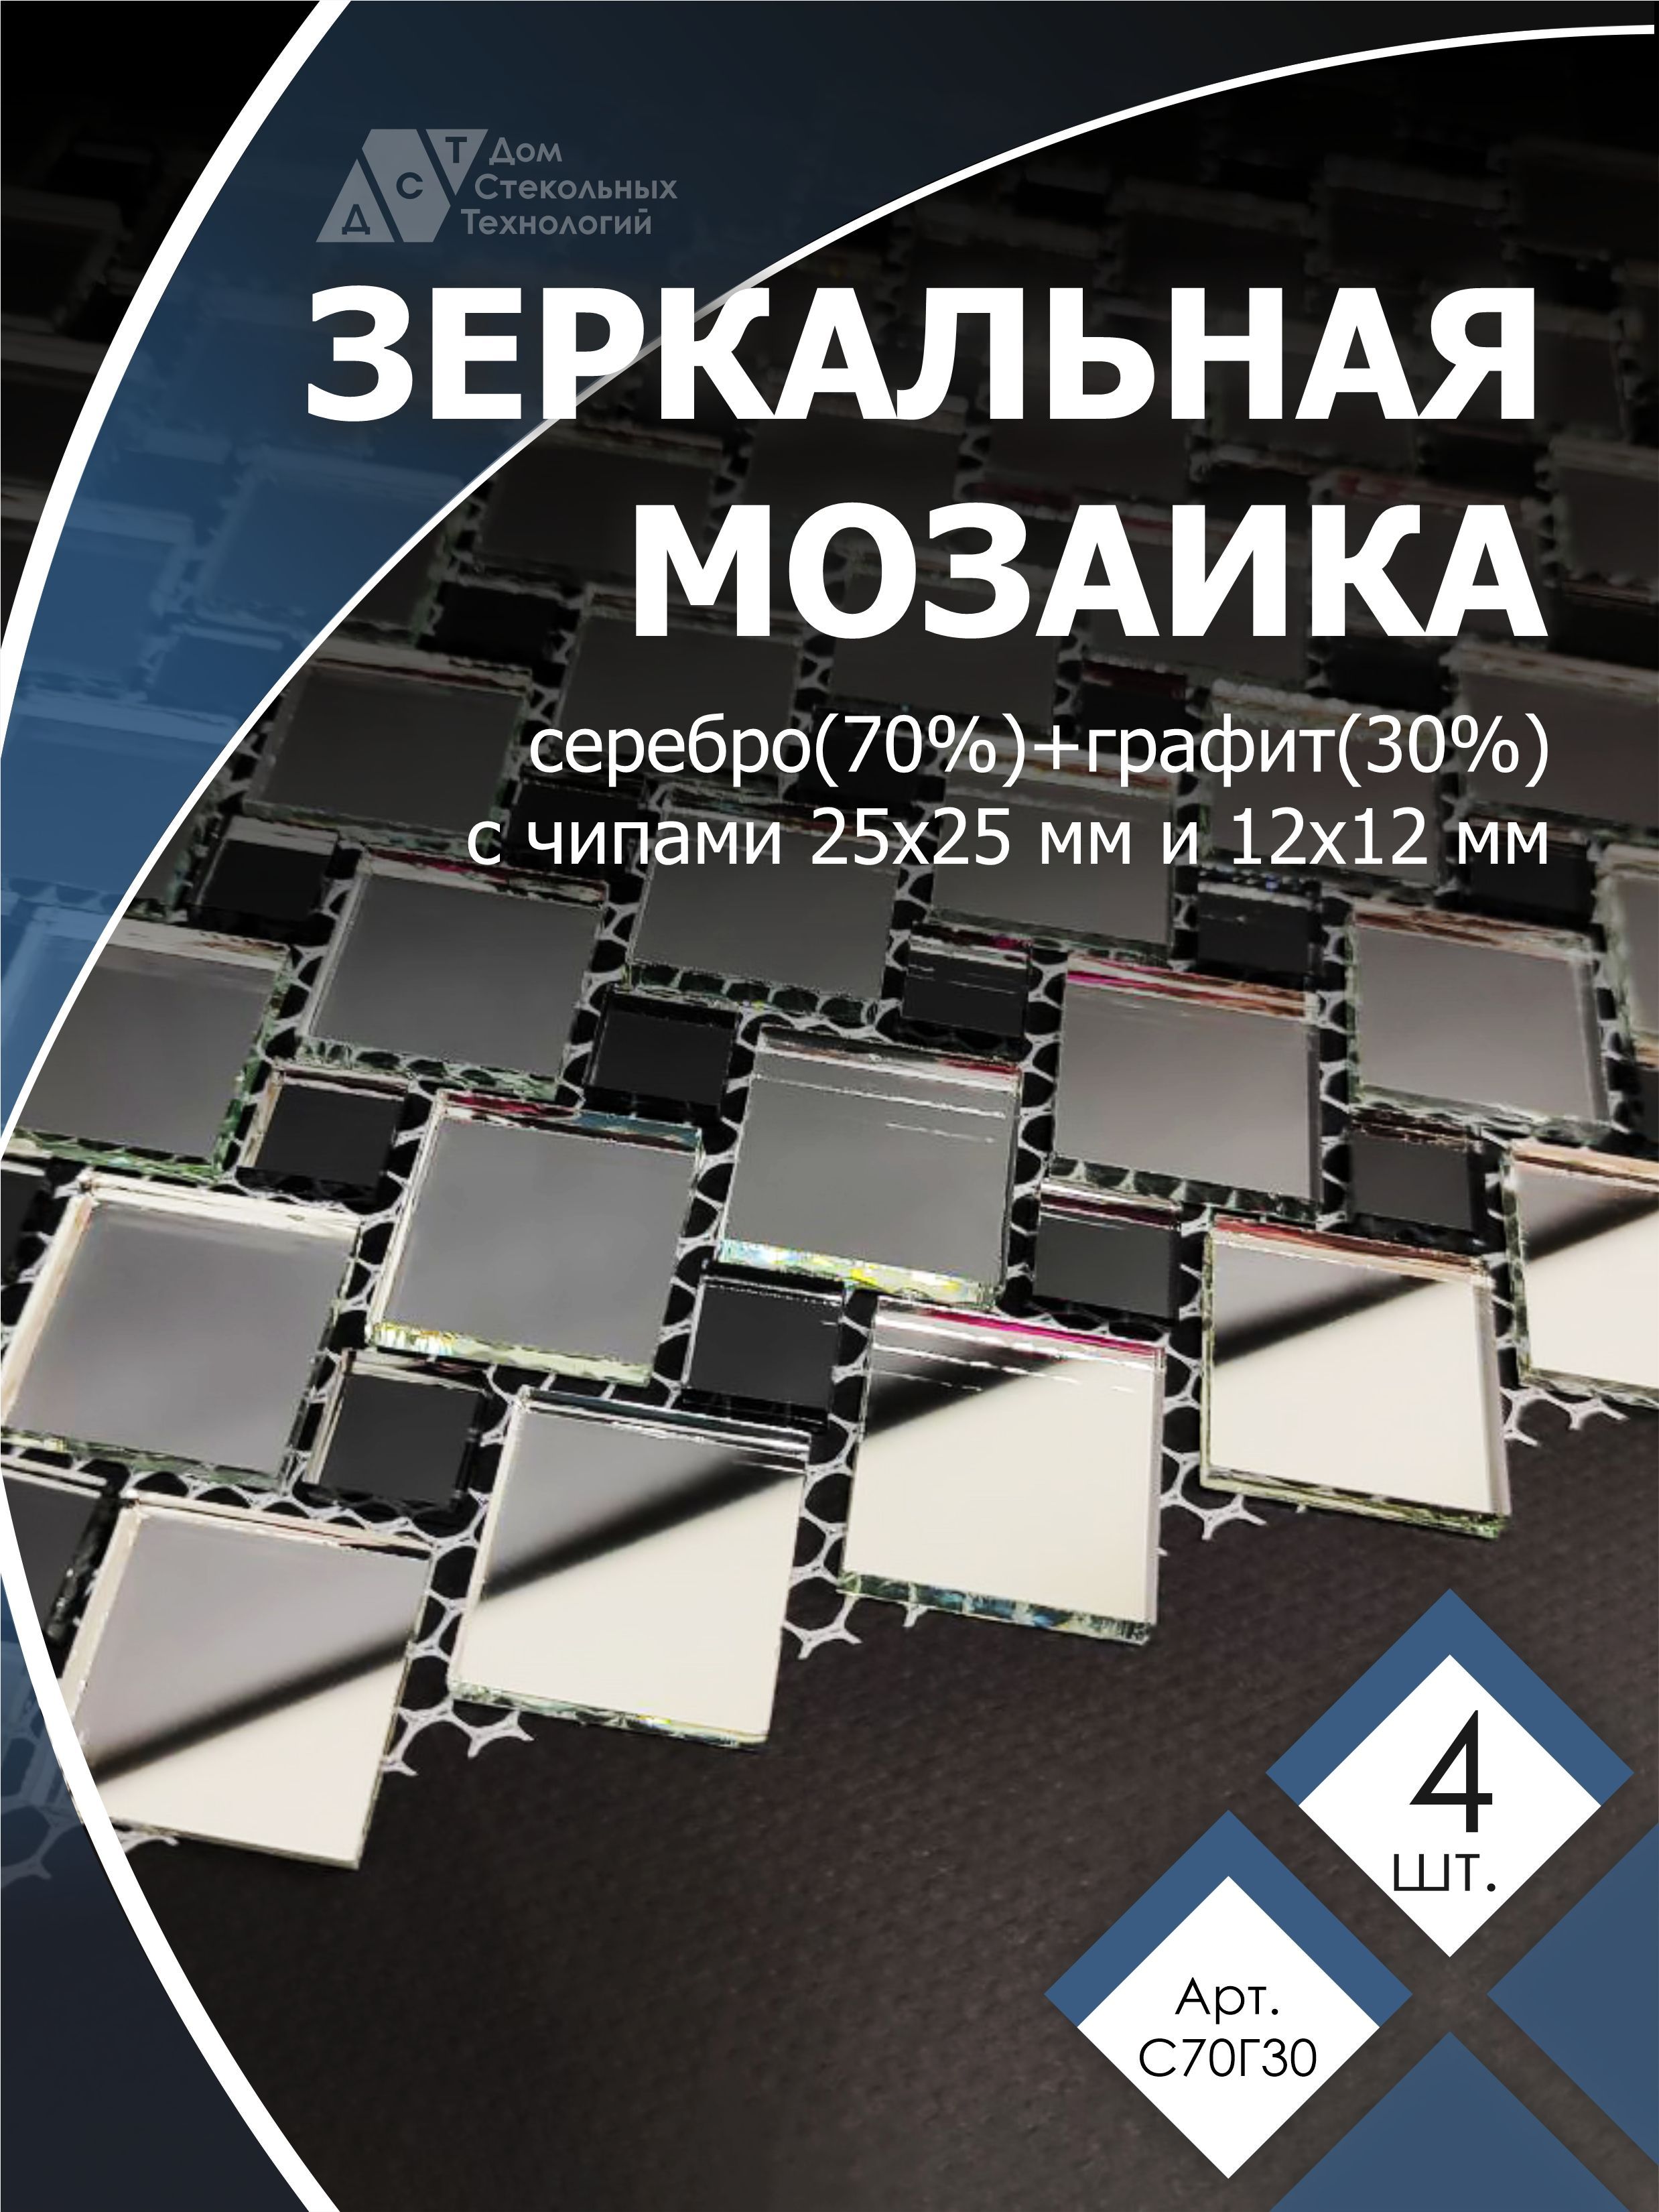 Зеркальная мозаика на сетке, ДСТ, 300х300 мм, серебро 70%, графит 30% (4 листов) целлюлозные губки для посуды paclan